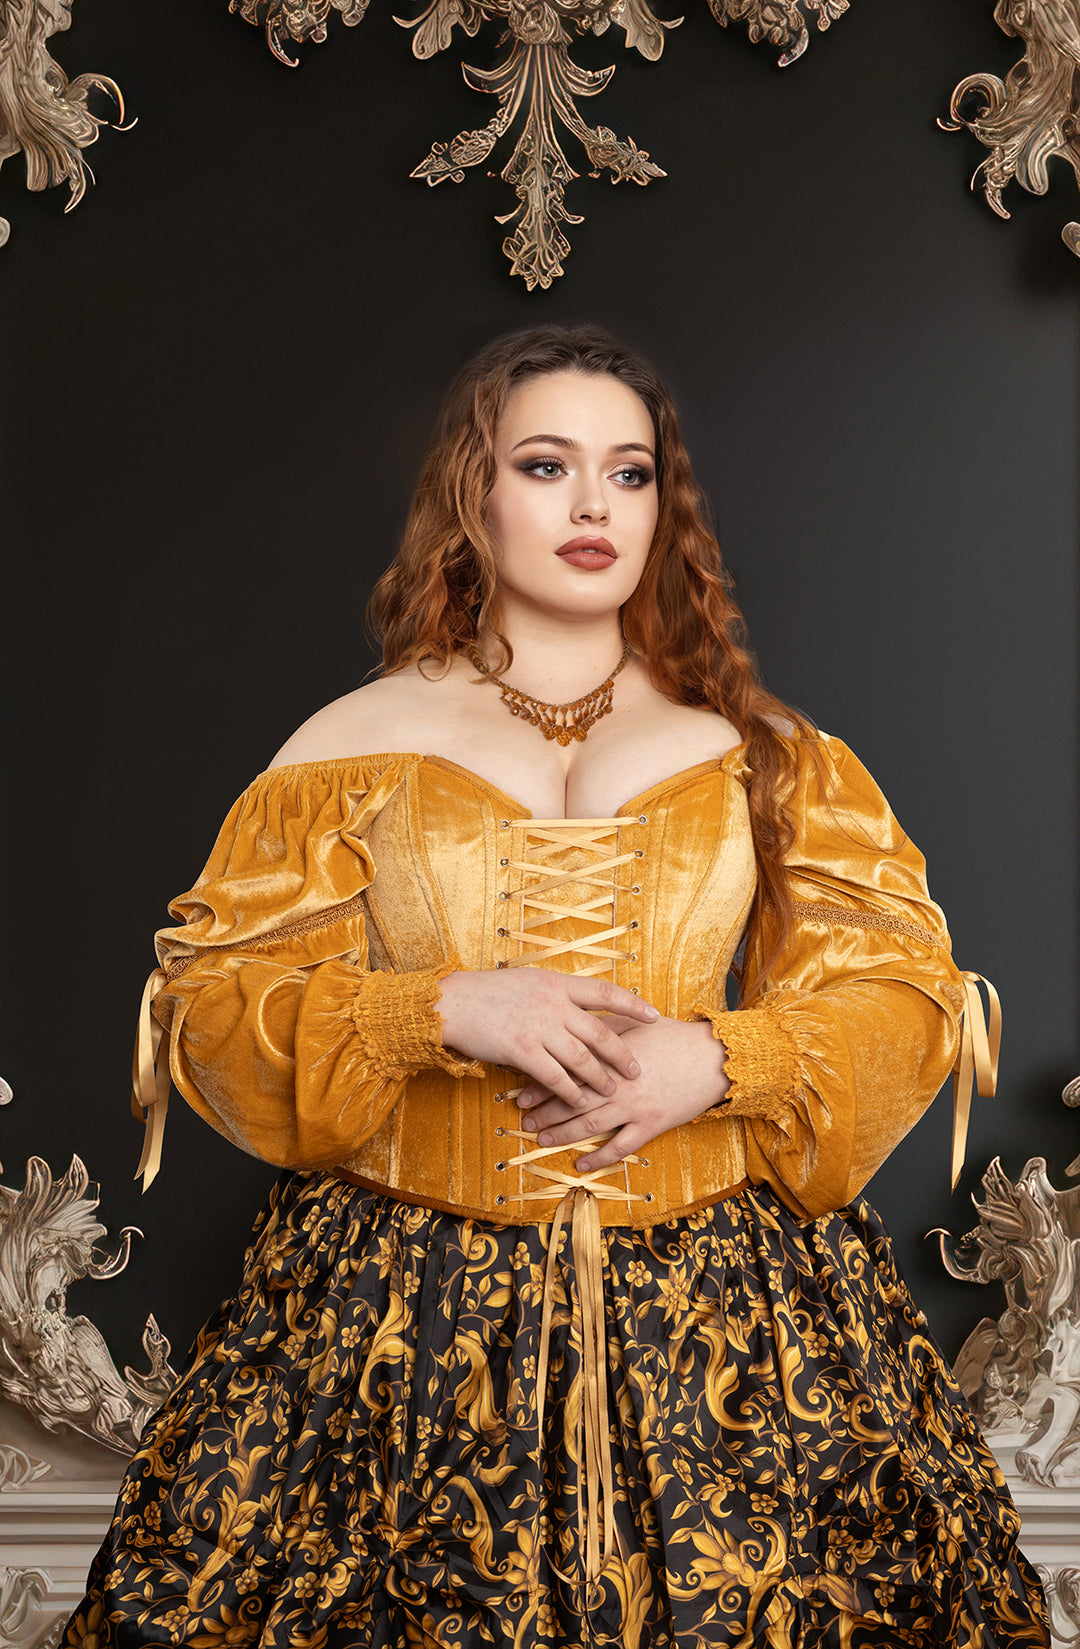 Princess Gold Corset Top in Golden Velvet